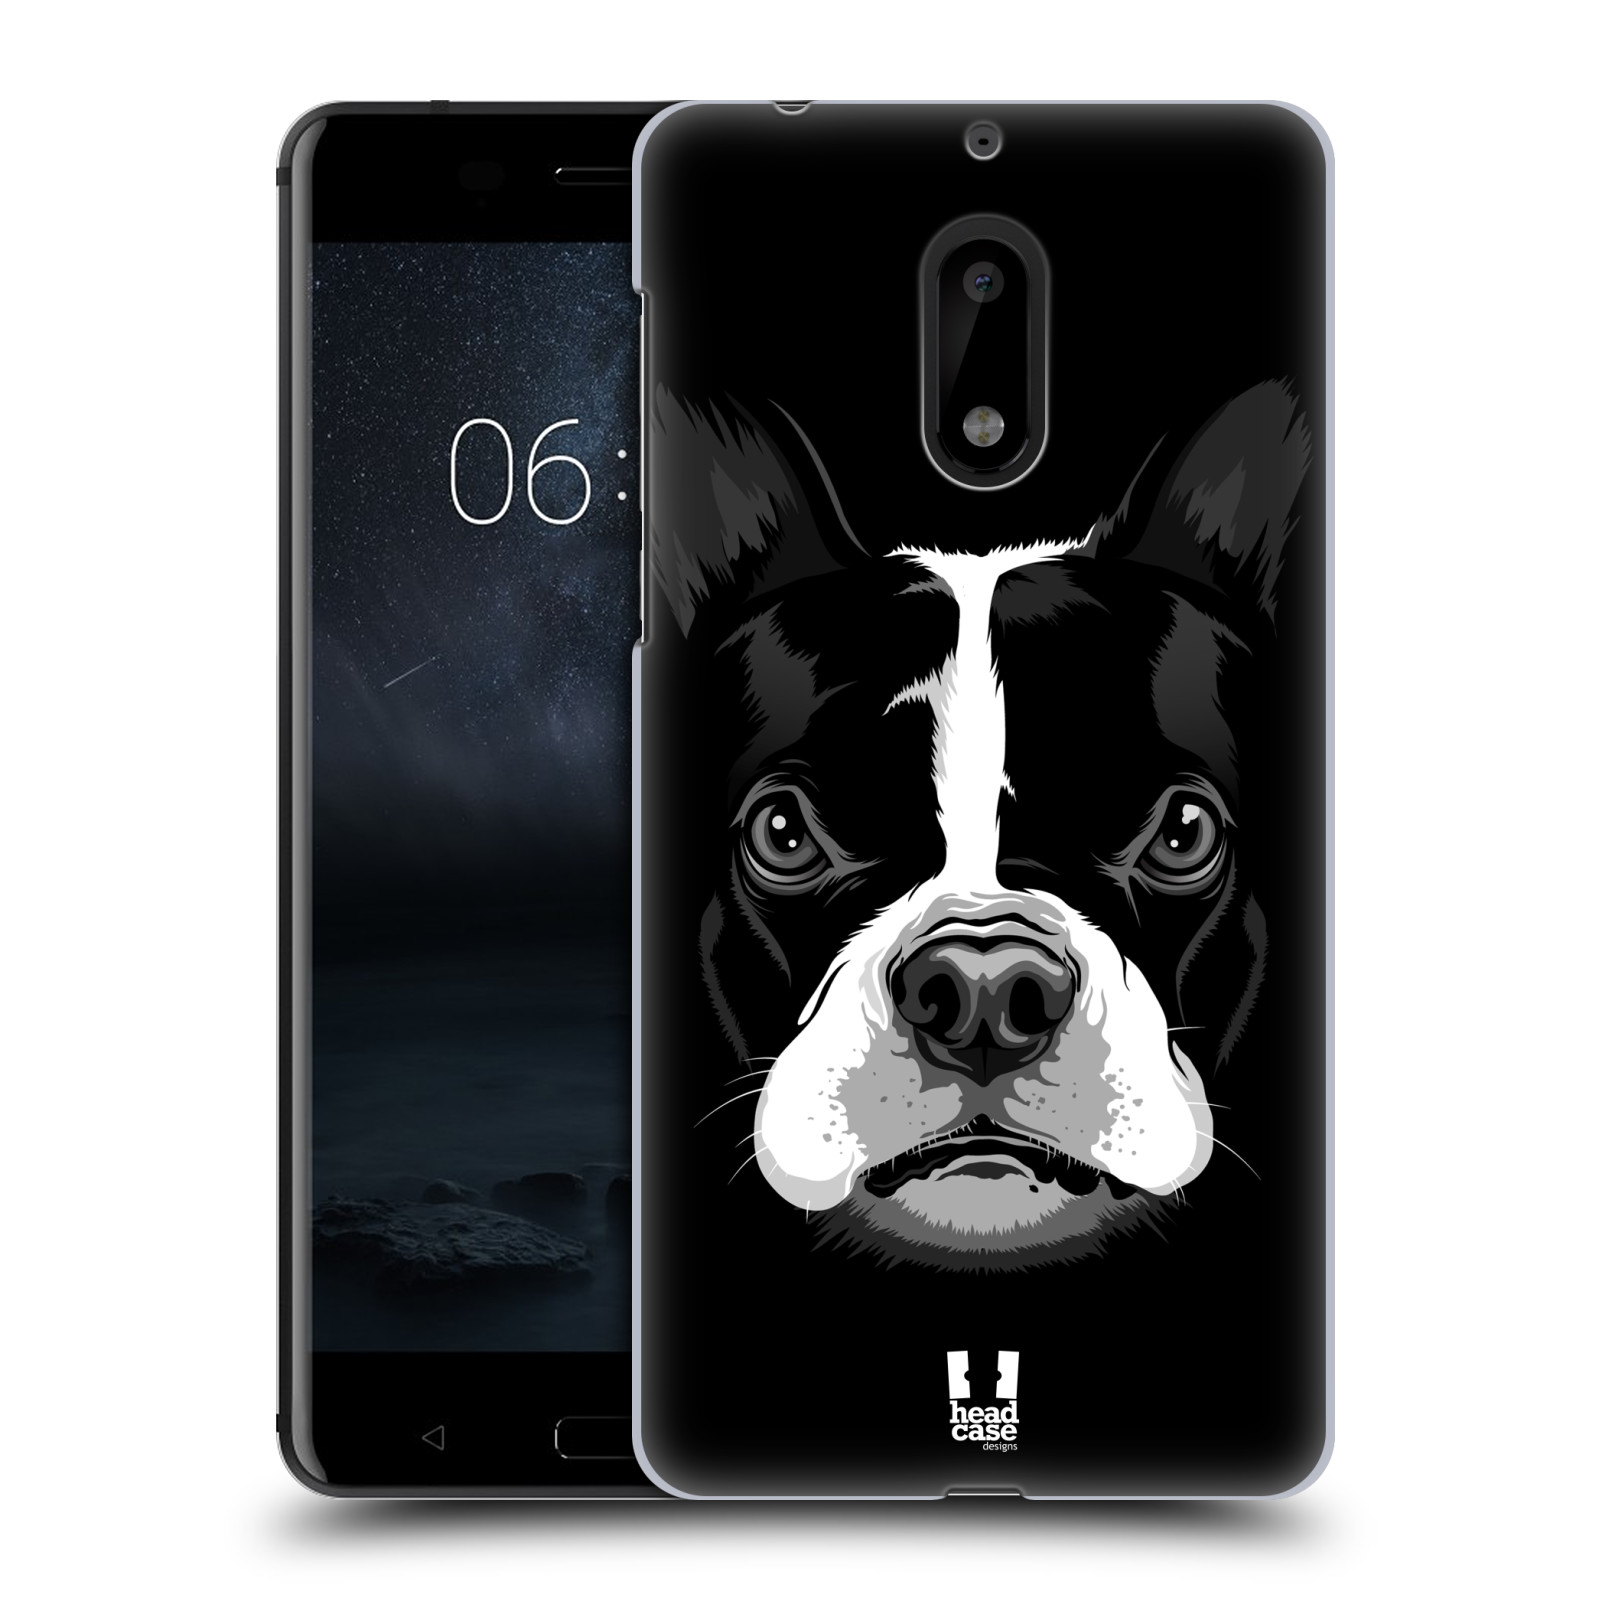 HEAD CASE plastový obal na mobil Nokia 6 vzor Zvíře kreslená tvář 2 buldok